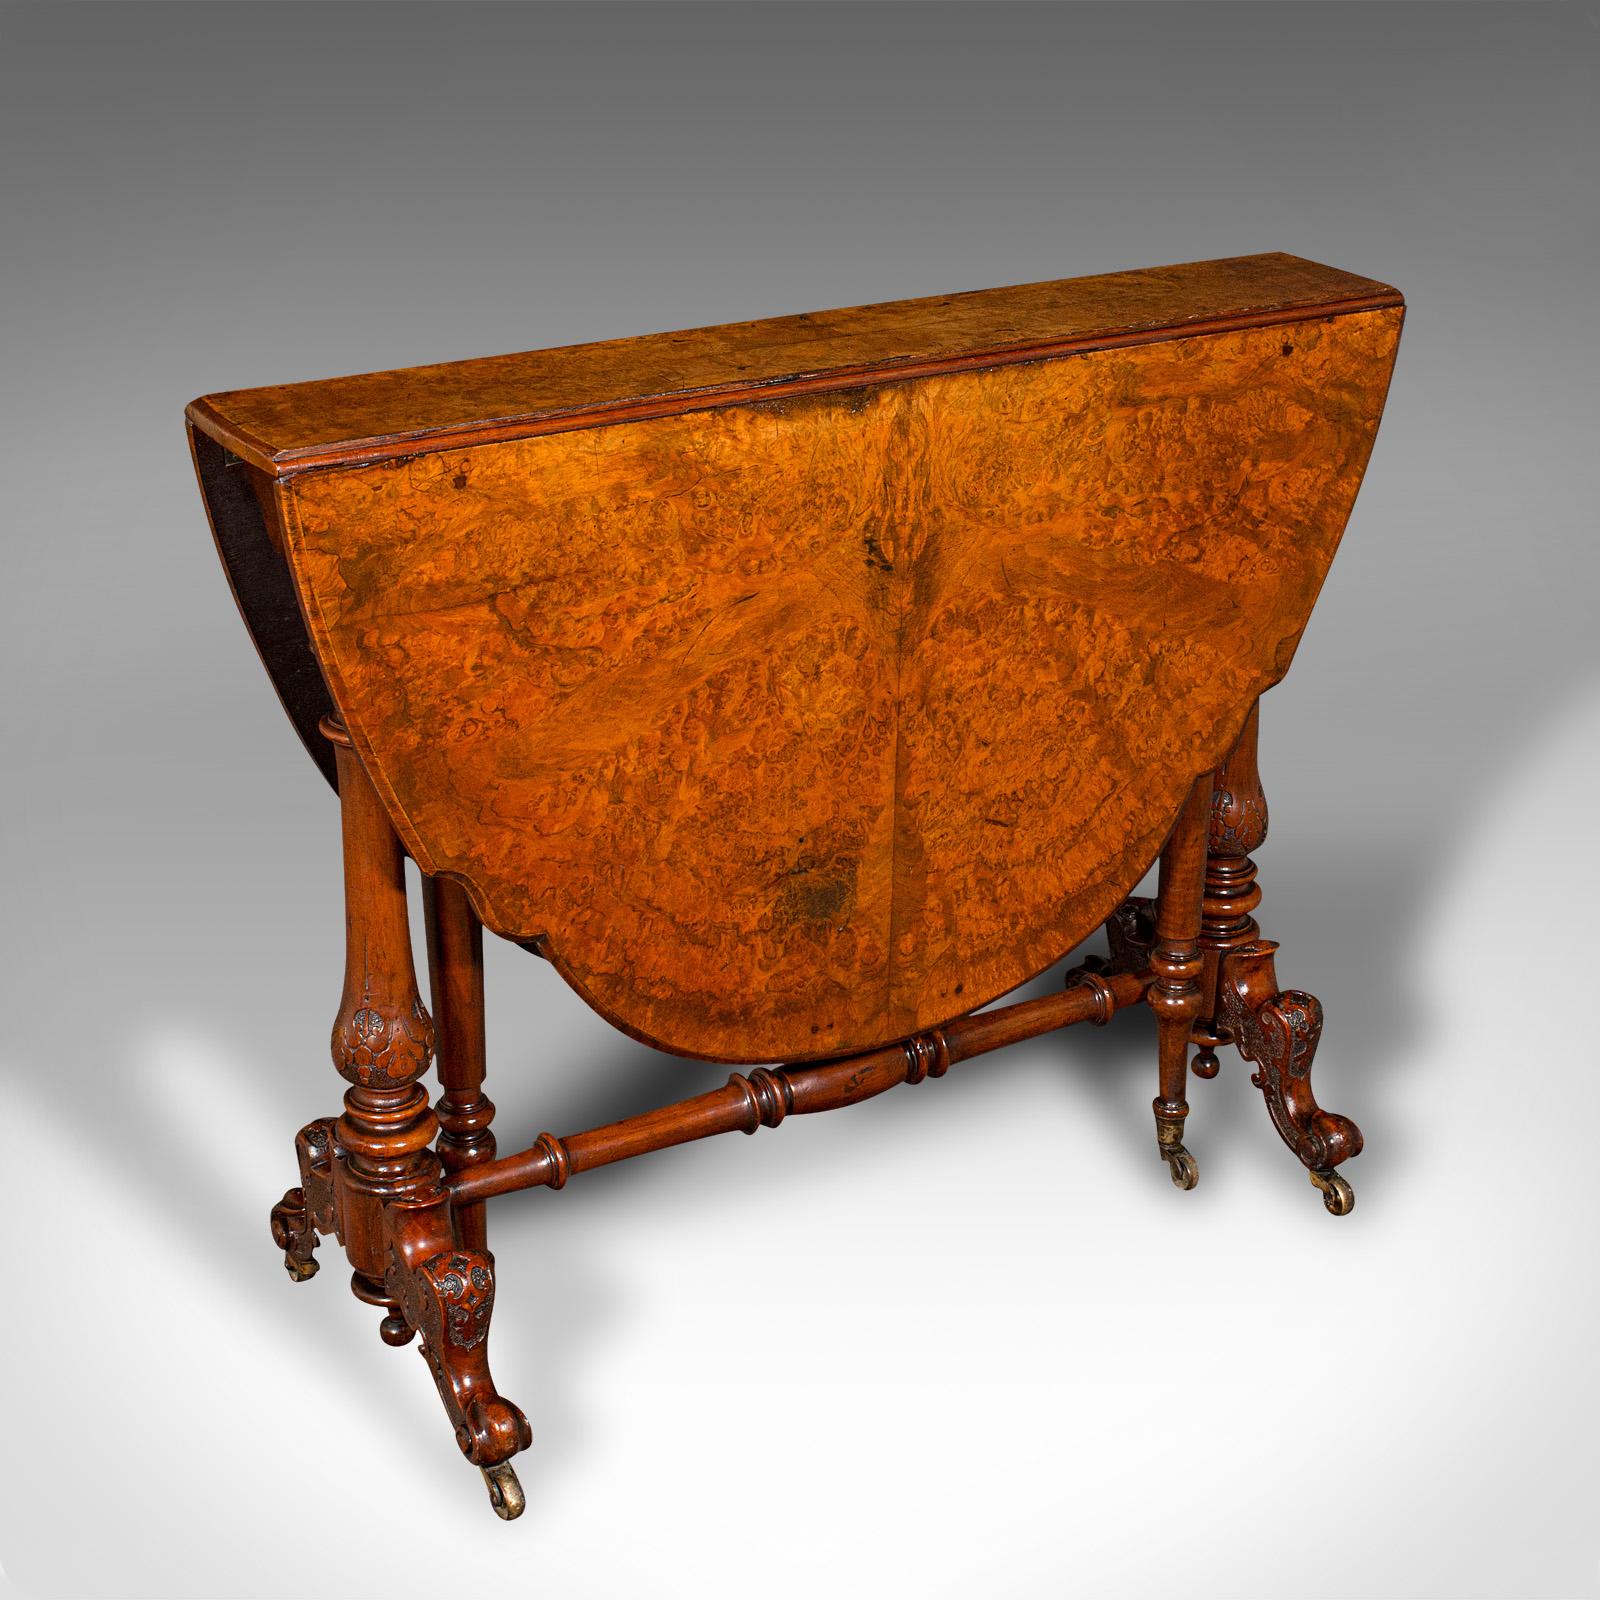 Il s'agit d'une table Sutherland ancienne. Table d'appoint à quatre places en ronce de noyer, datant du début de la période victorienne, vers 1840.

Table ovale de forme traditionnelle Sutherland, d'un aspect impressionnant.
Présente une patine